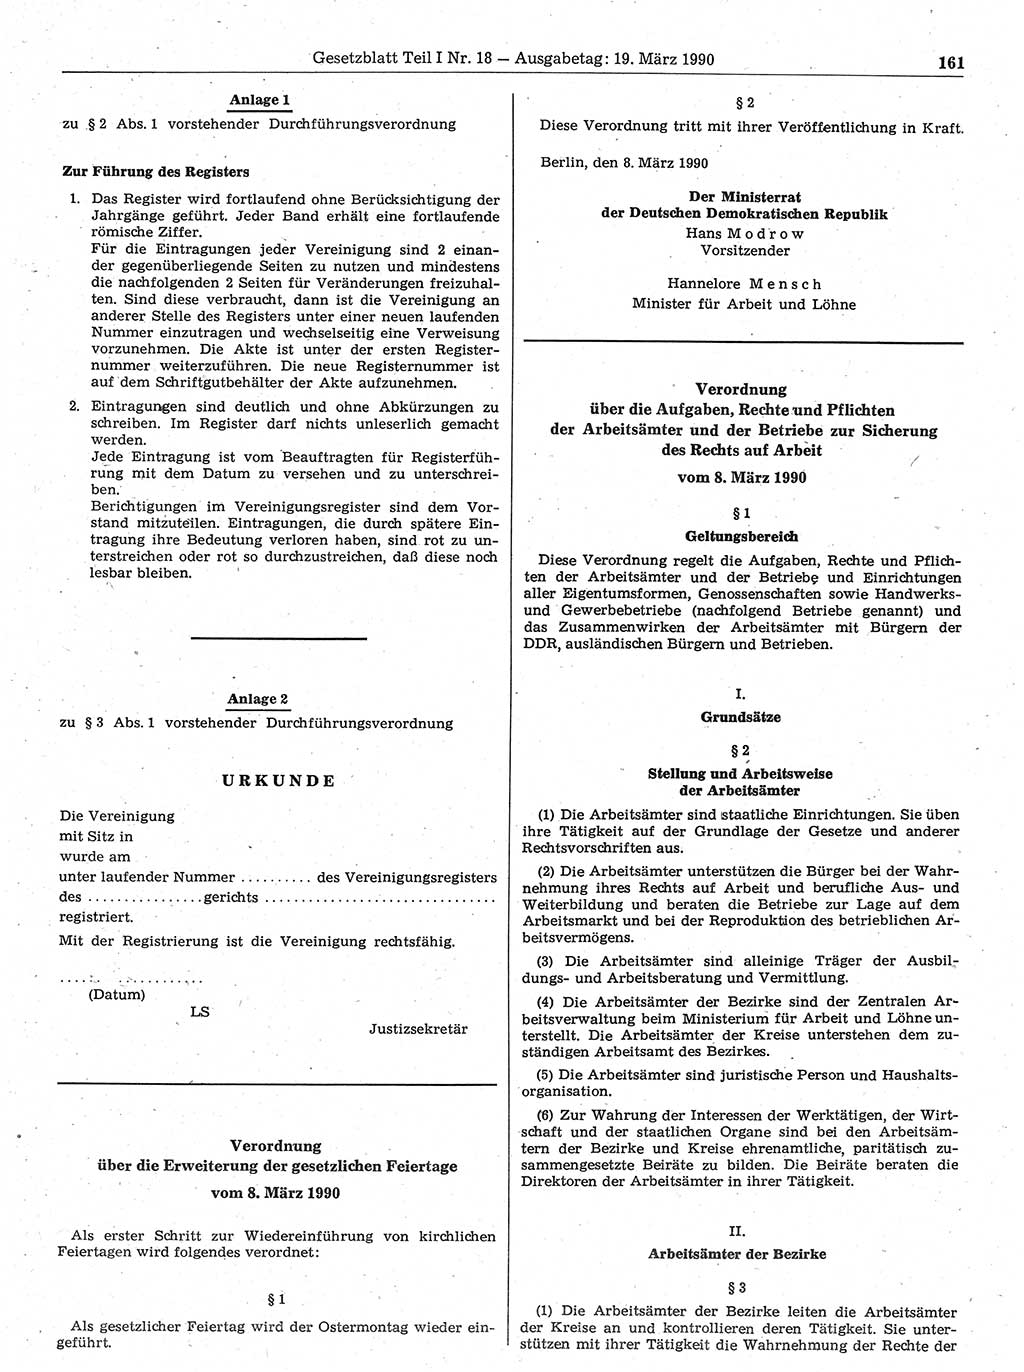 Gesetzblatt (GBl.) der Deutschen Demokratischen Republik (DDR) Teil Ⅰ 1990, Seite 161 (GBl. DDR Ⅰ 1990, S. 161)